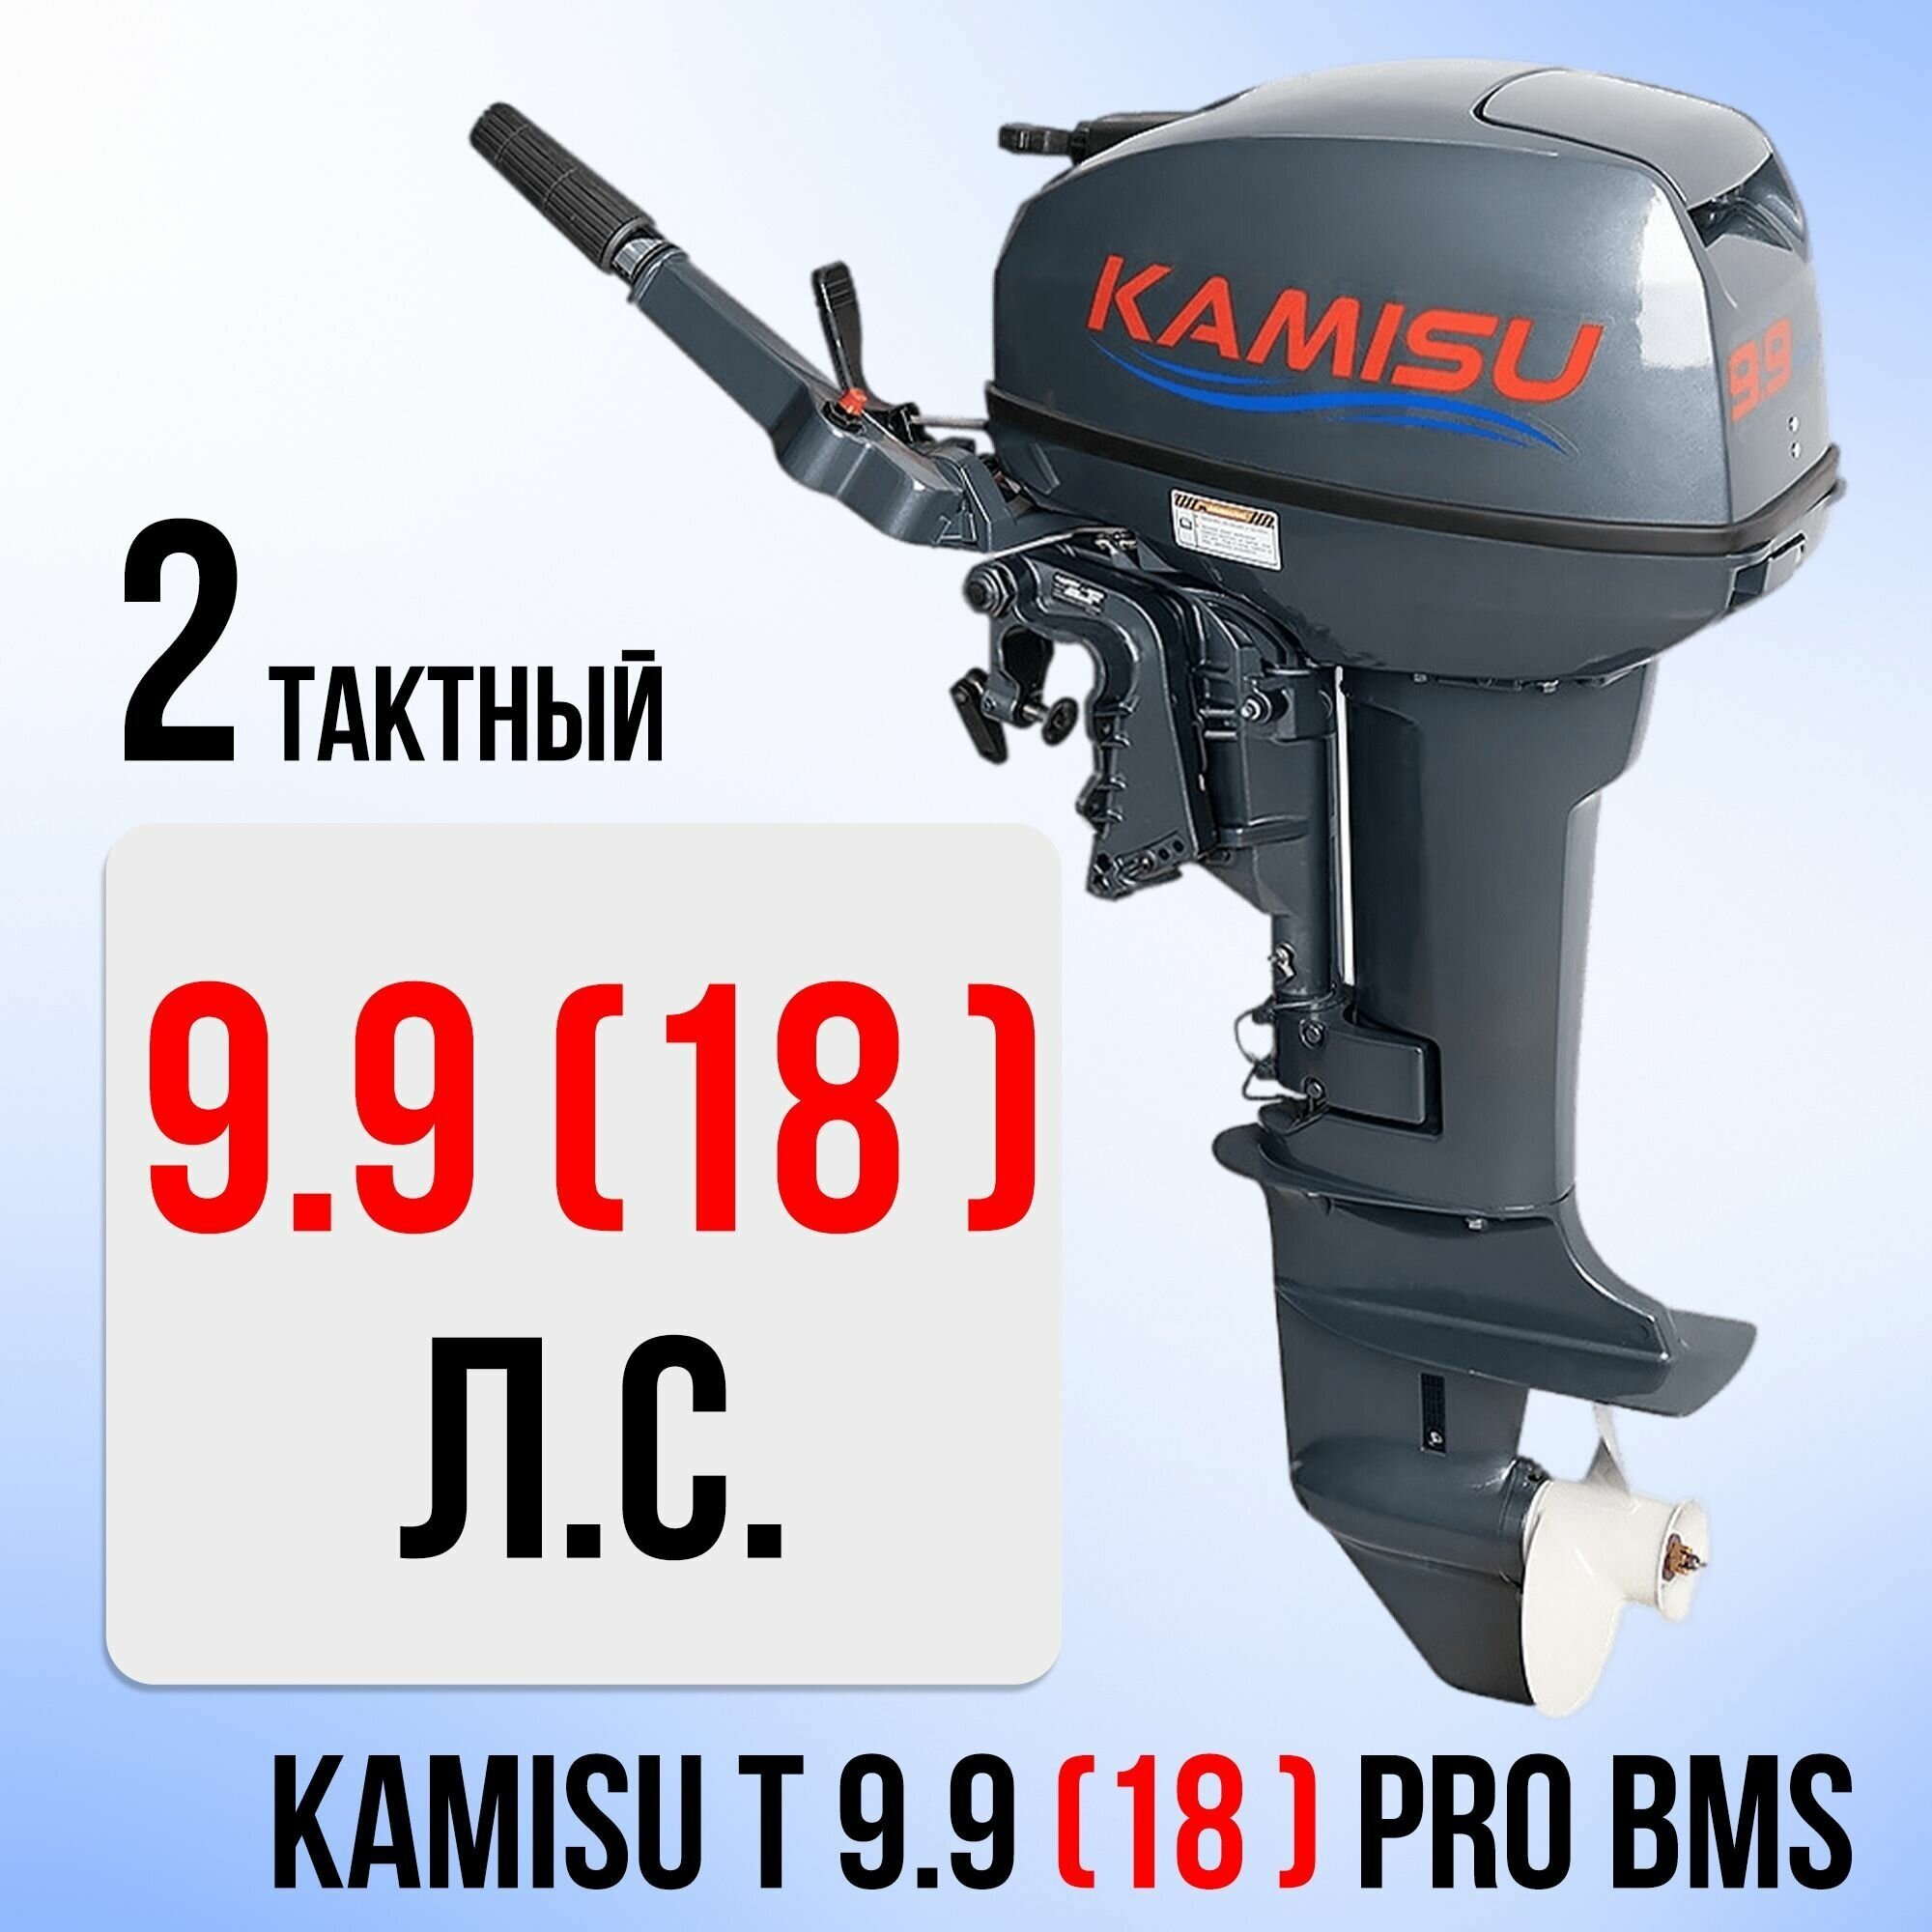 Бензиновый лодочный мотор KAMISU T 9.9(18) PRO BMS 2-х тактный